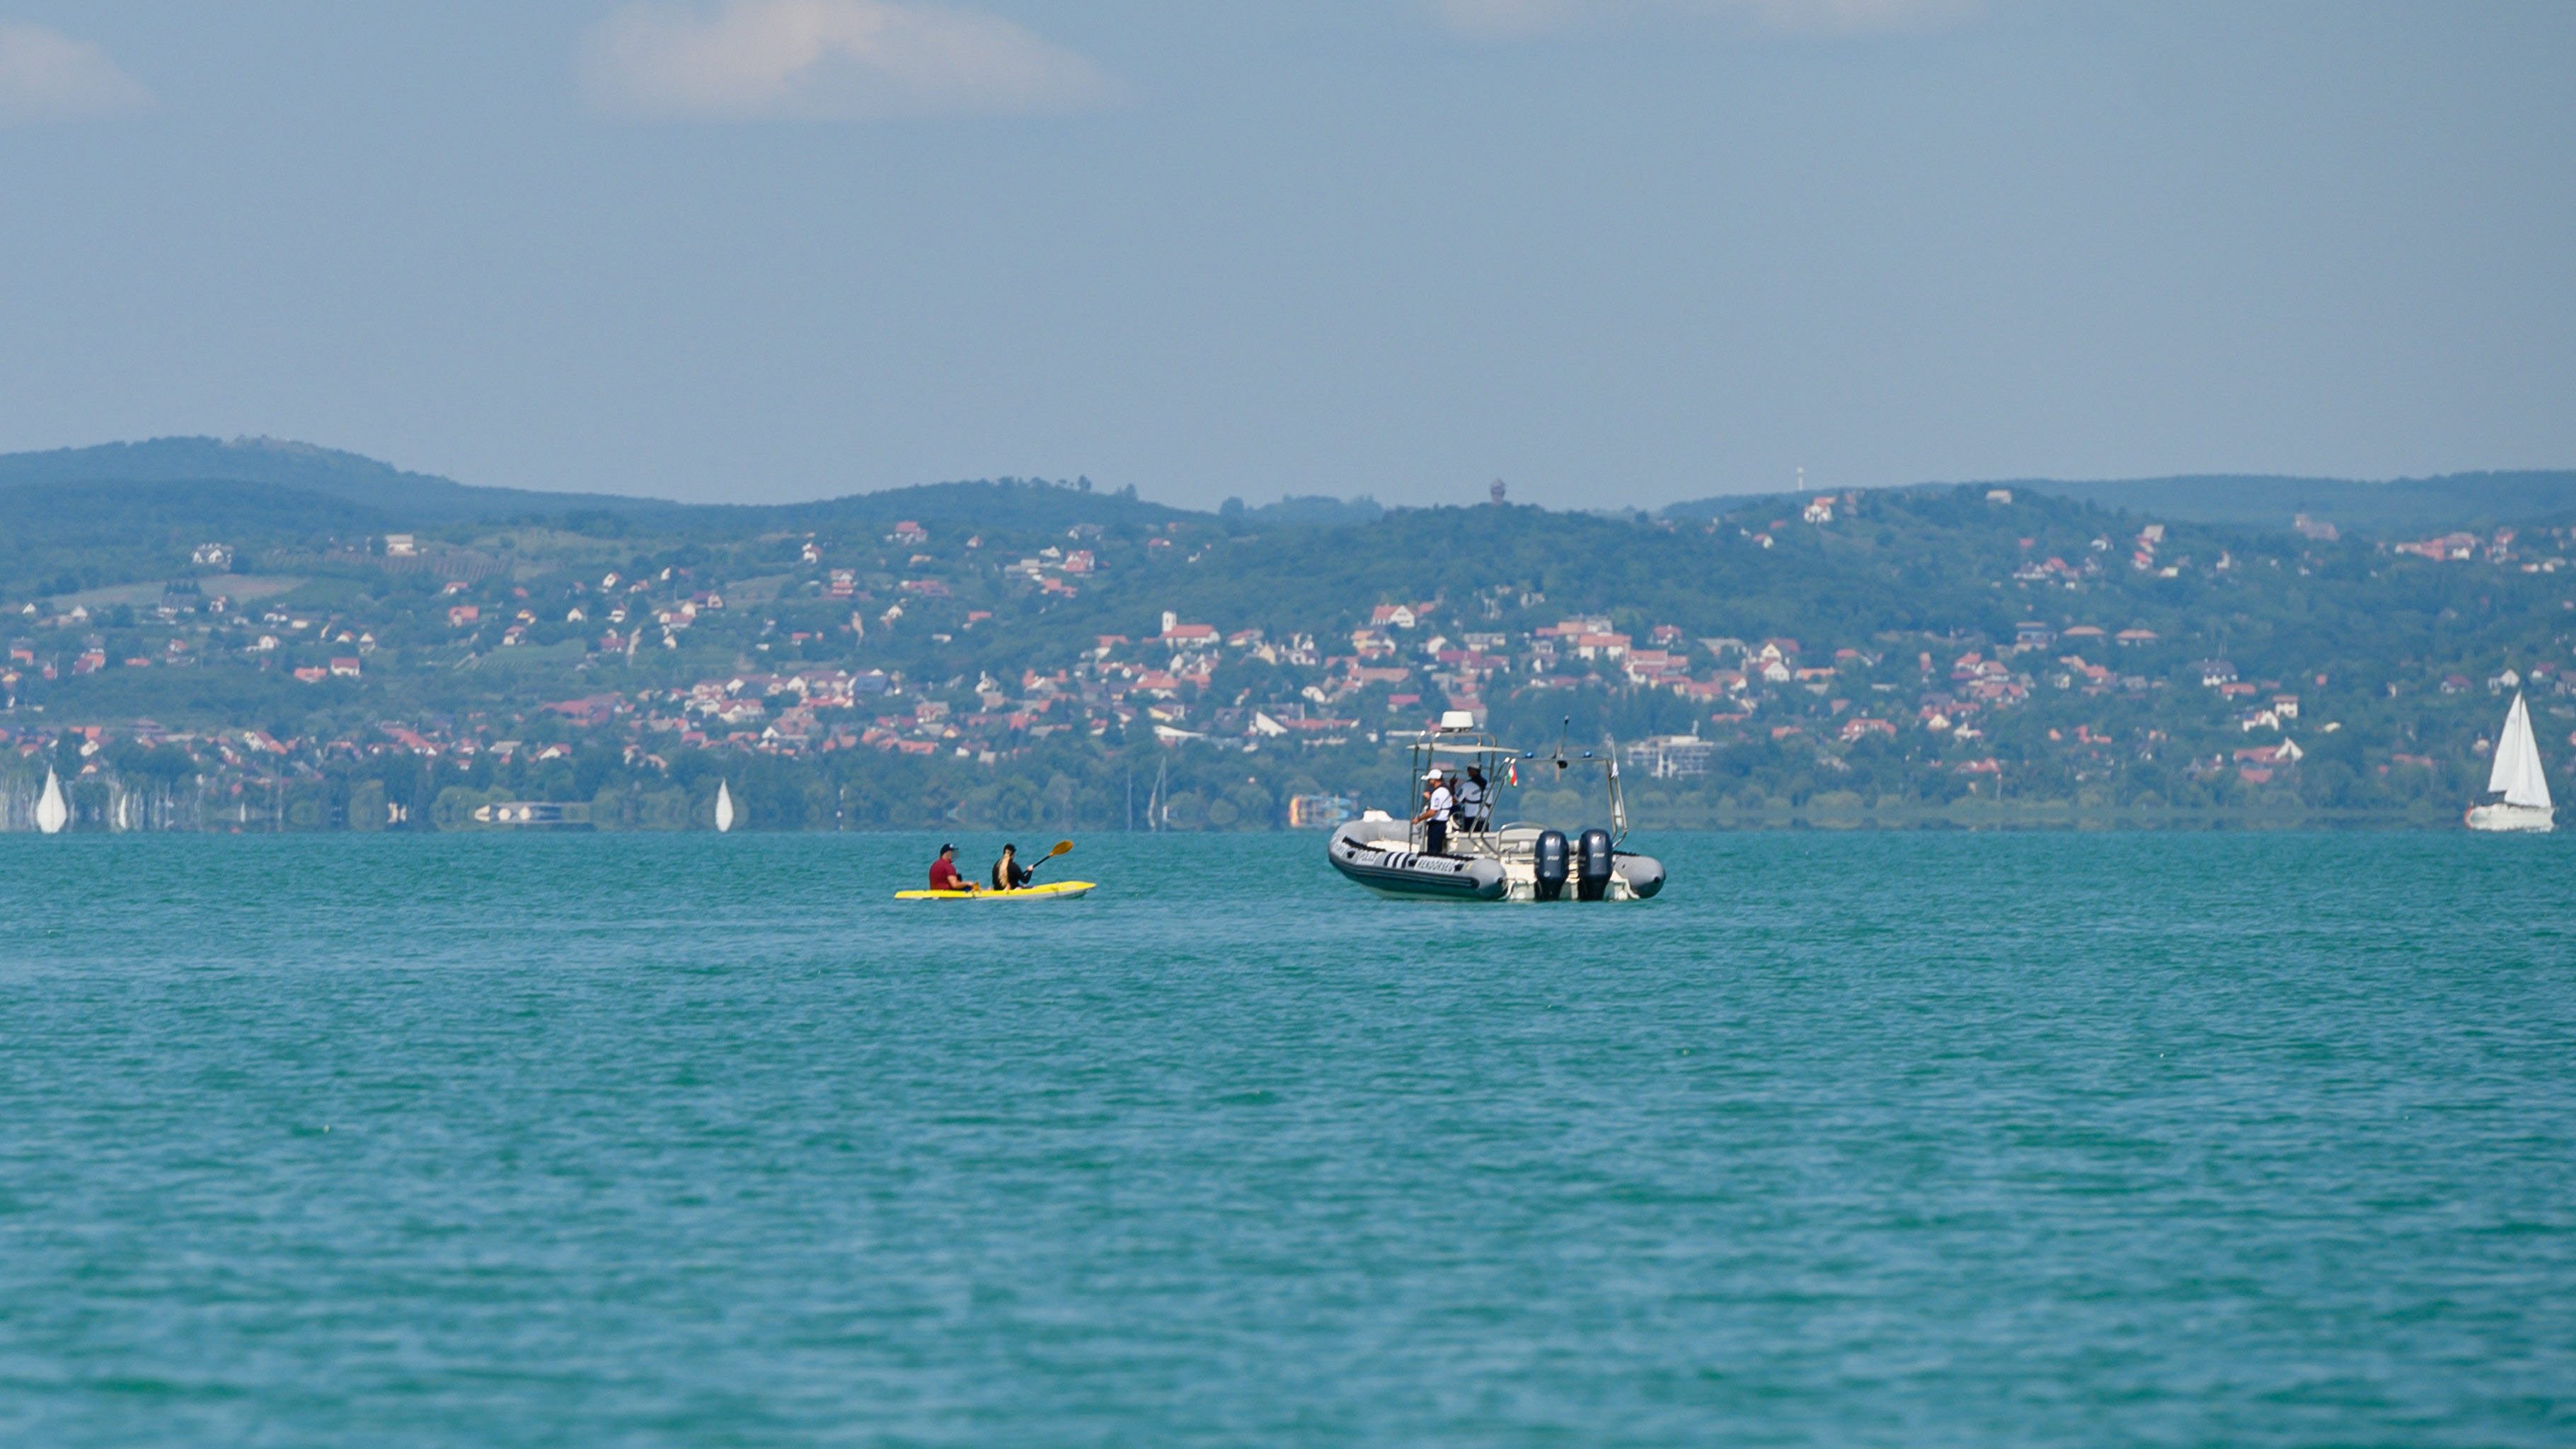 Belefulladt a Balatonba egy férfi a siófoki strandnál